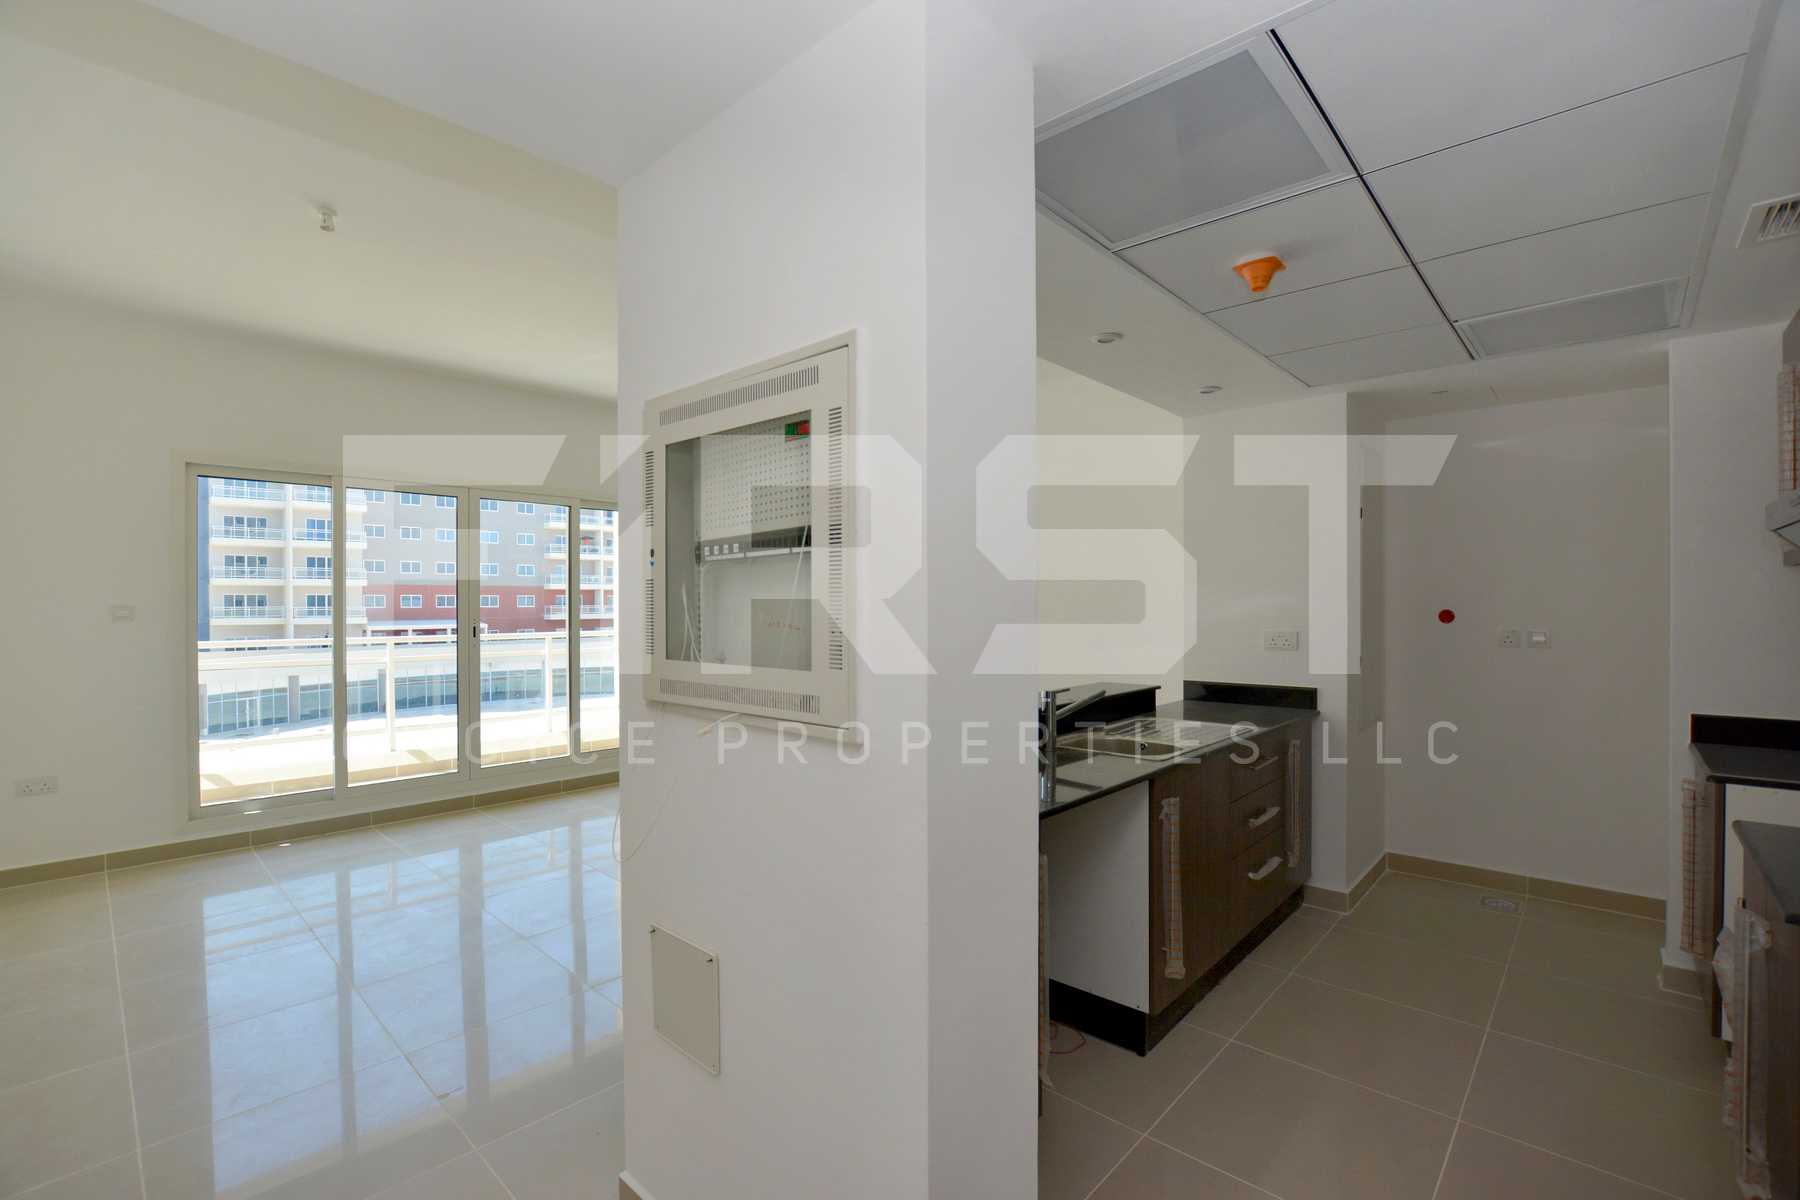 Internal Photo of 1 Bedroom Apartment Type A in Al Reef Downtown Al Reef Abu Dhabi UAE 74 sq.m 796 sq.ft (18).jpg